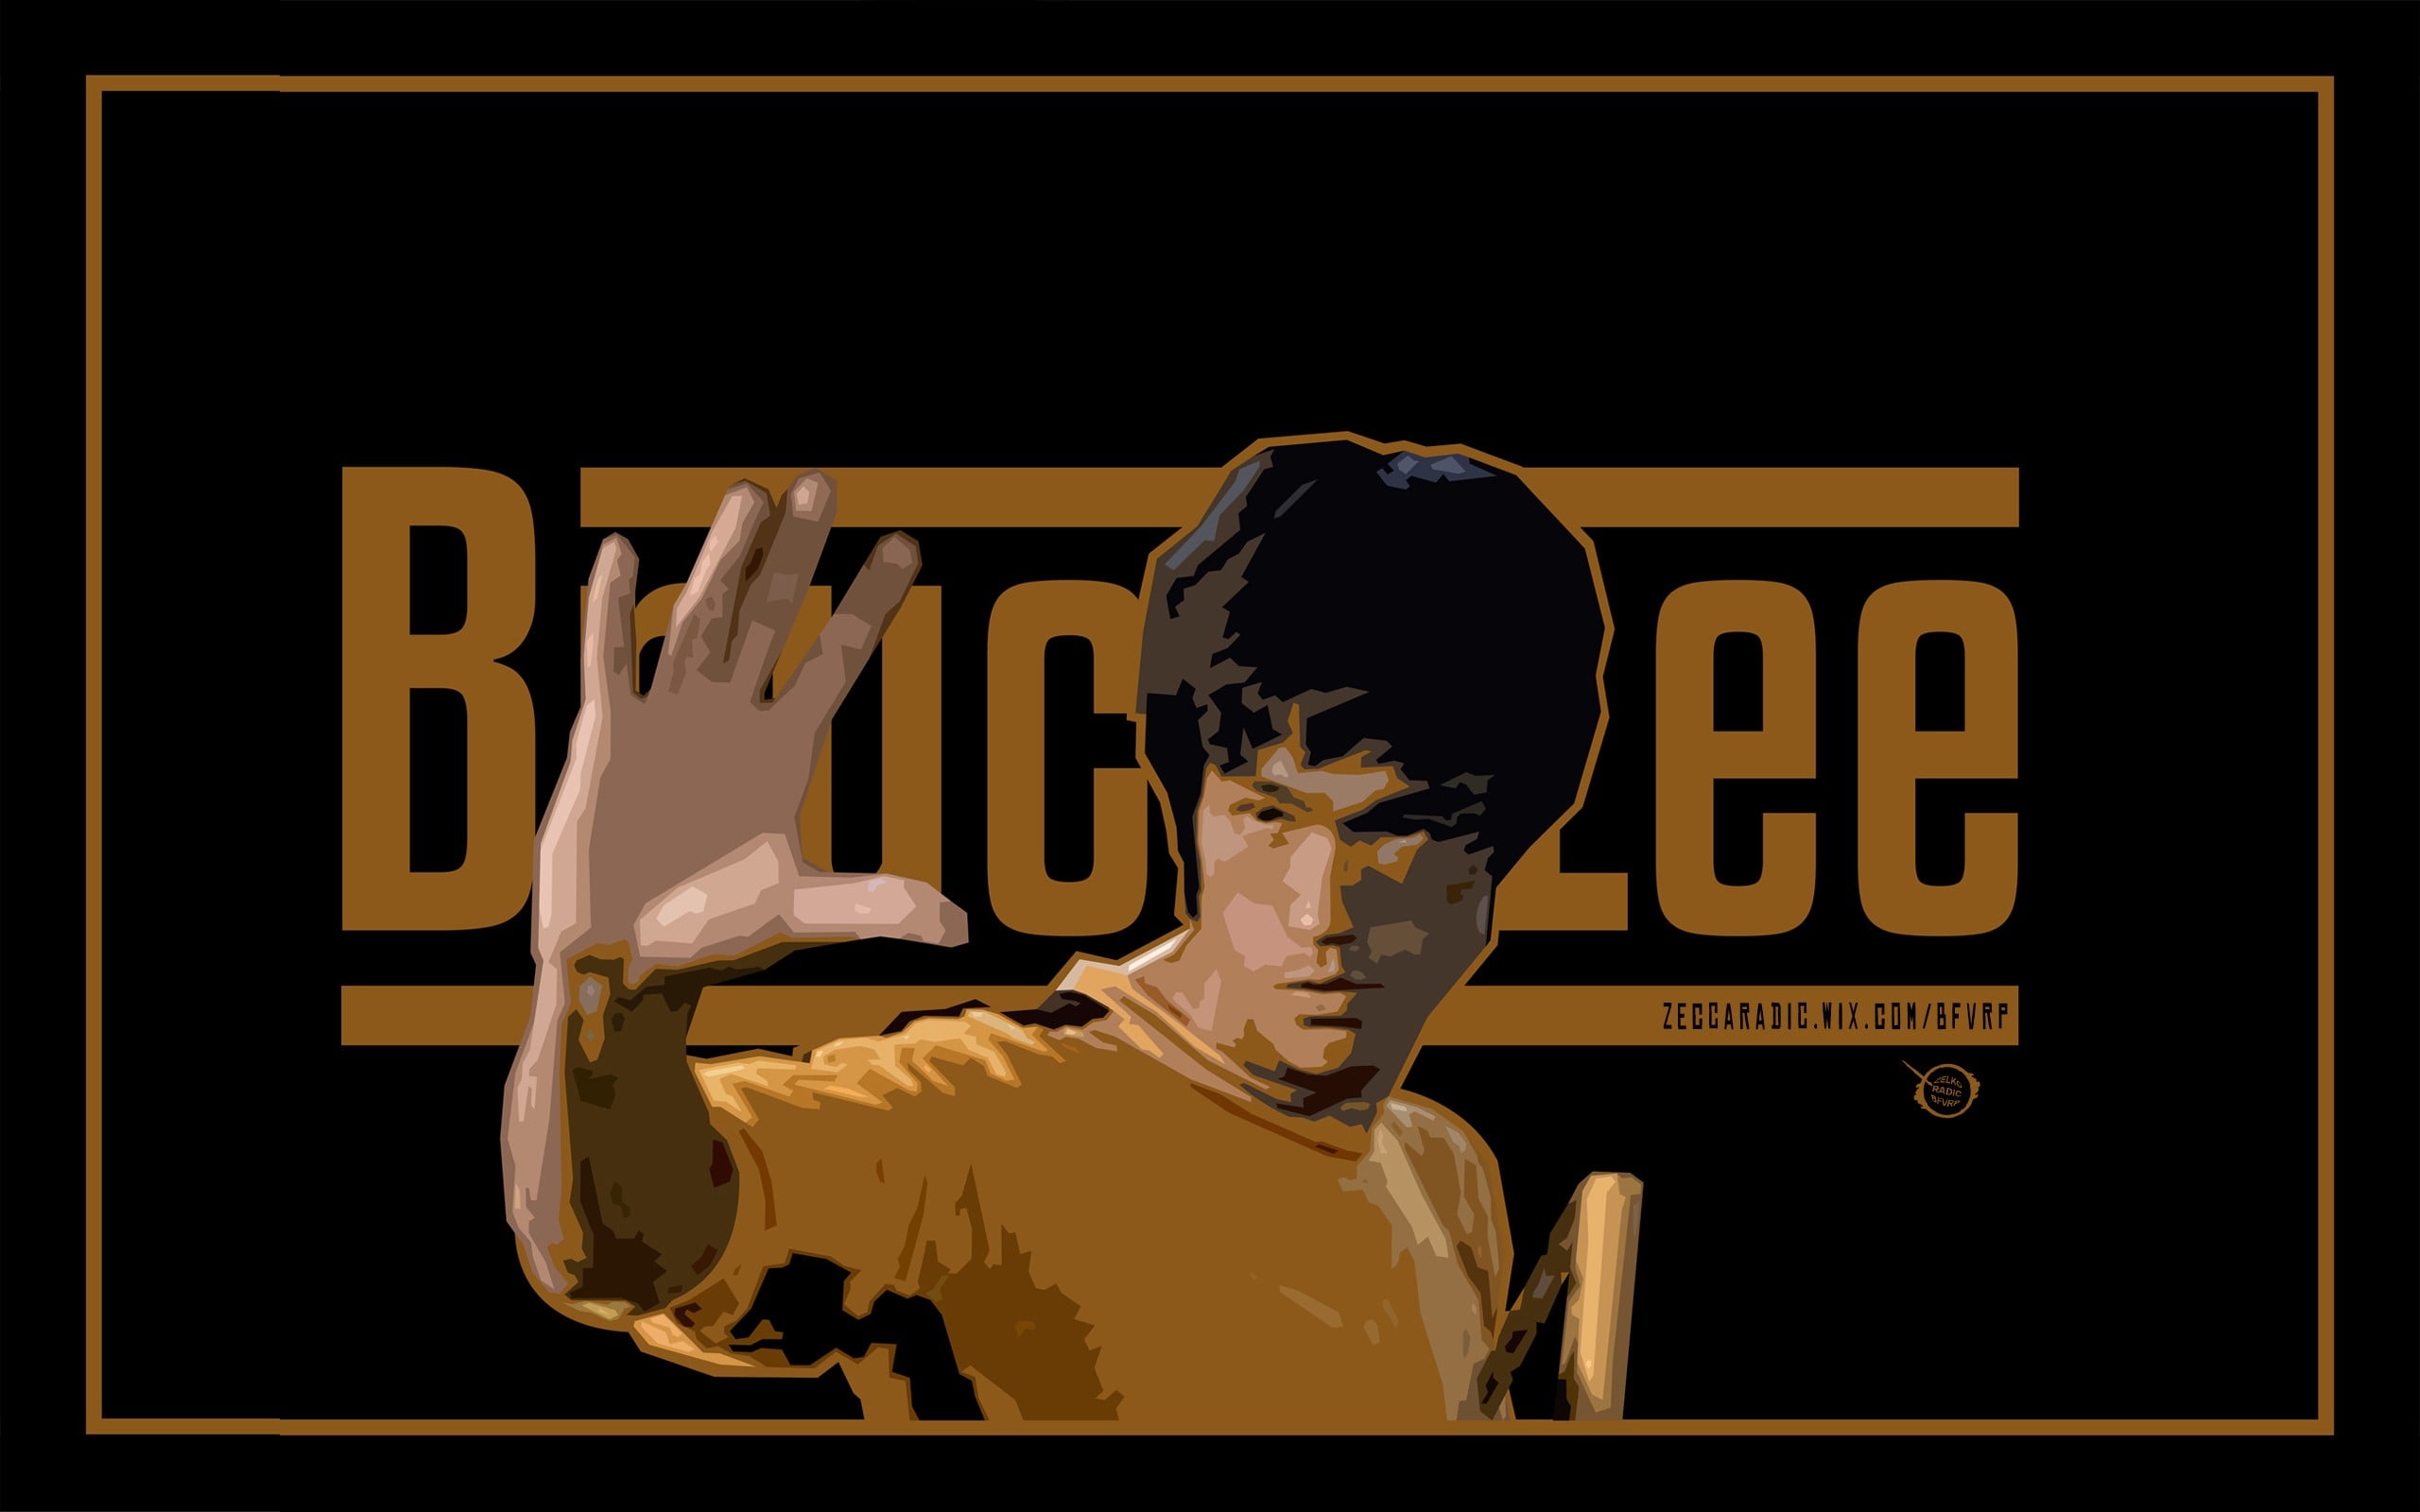 Bruce Lee poster, Bruce Lee, kung fu, digital prints, artwork